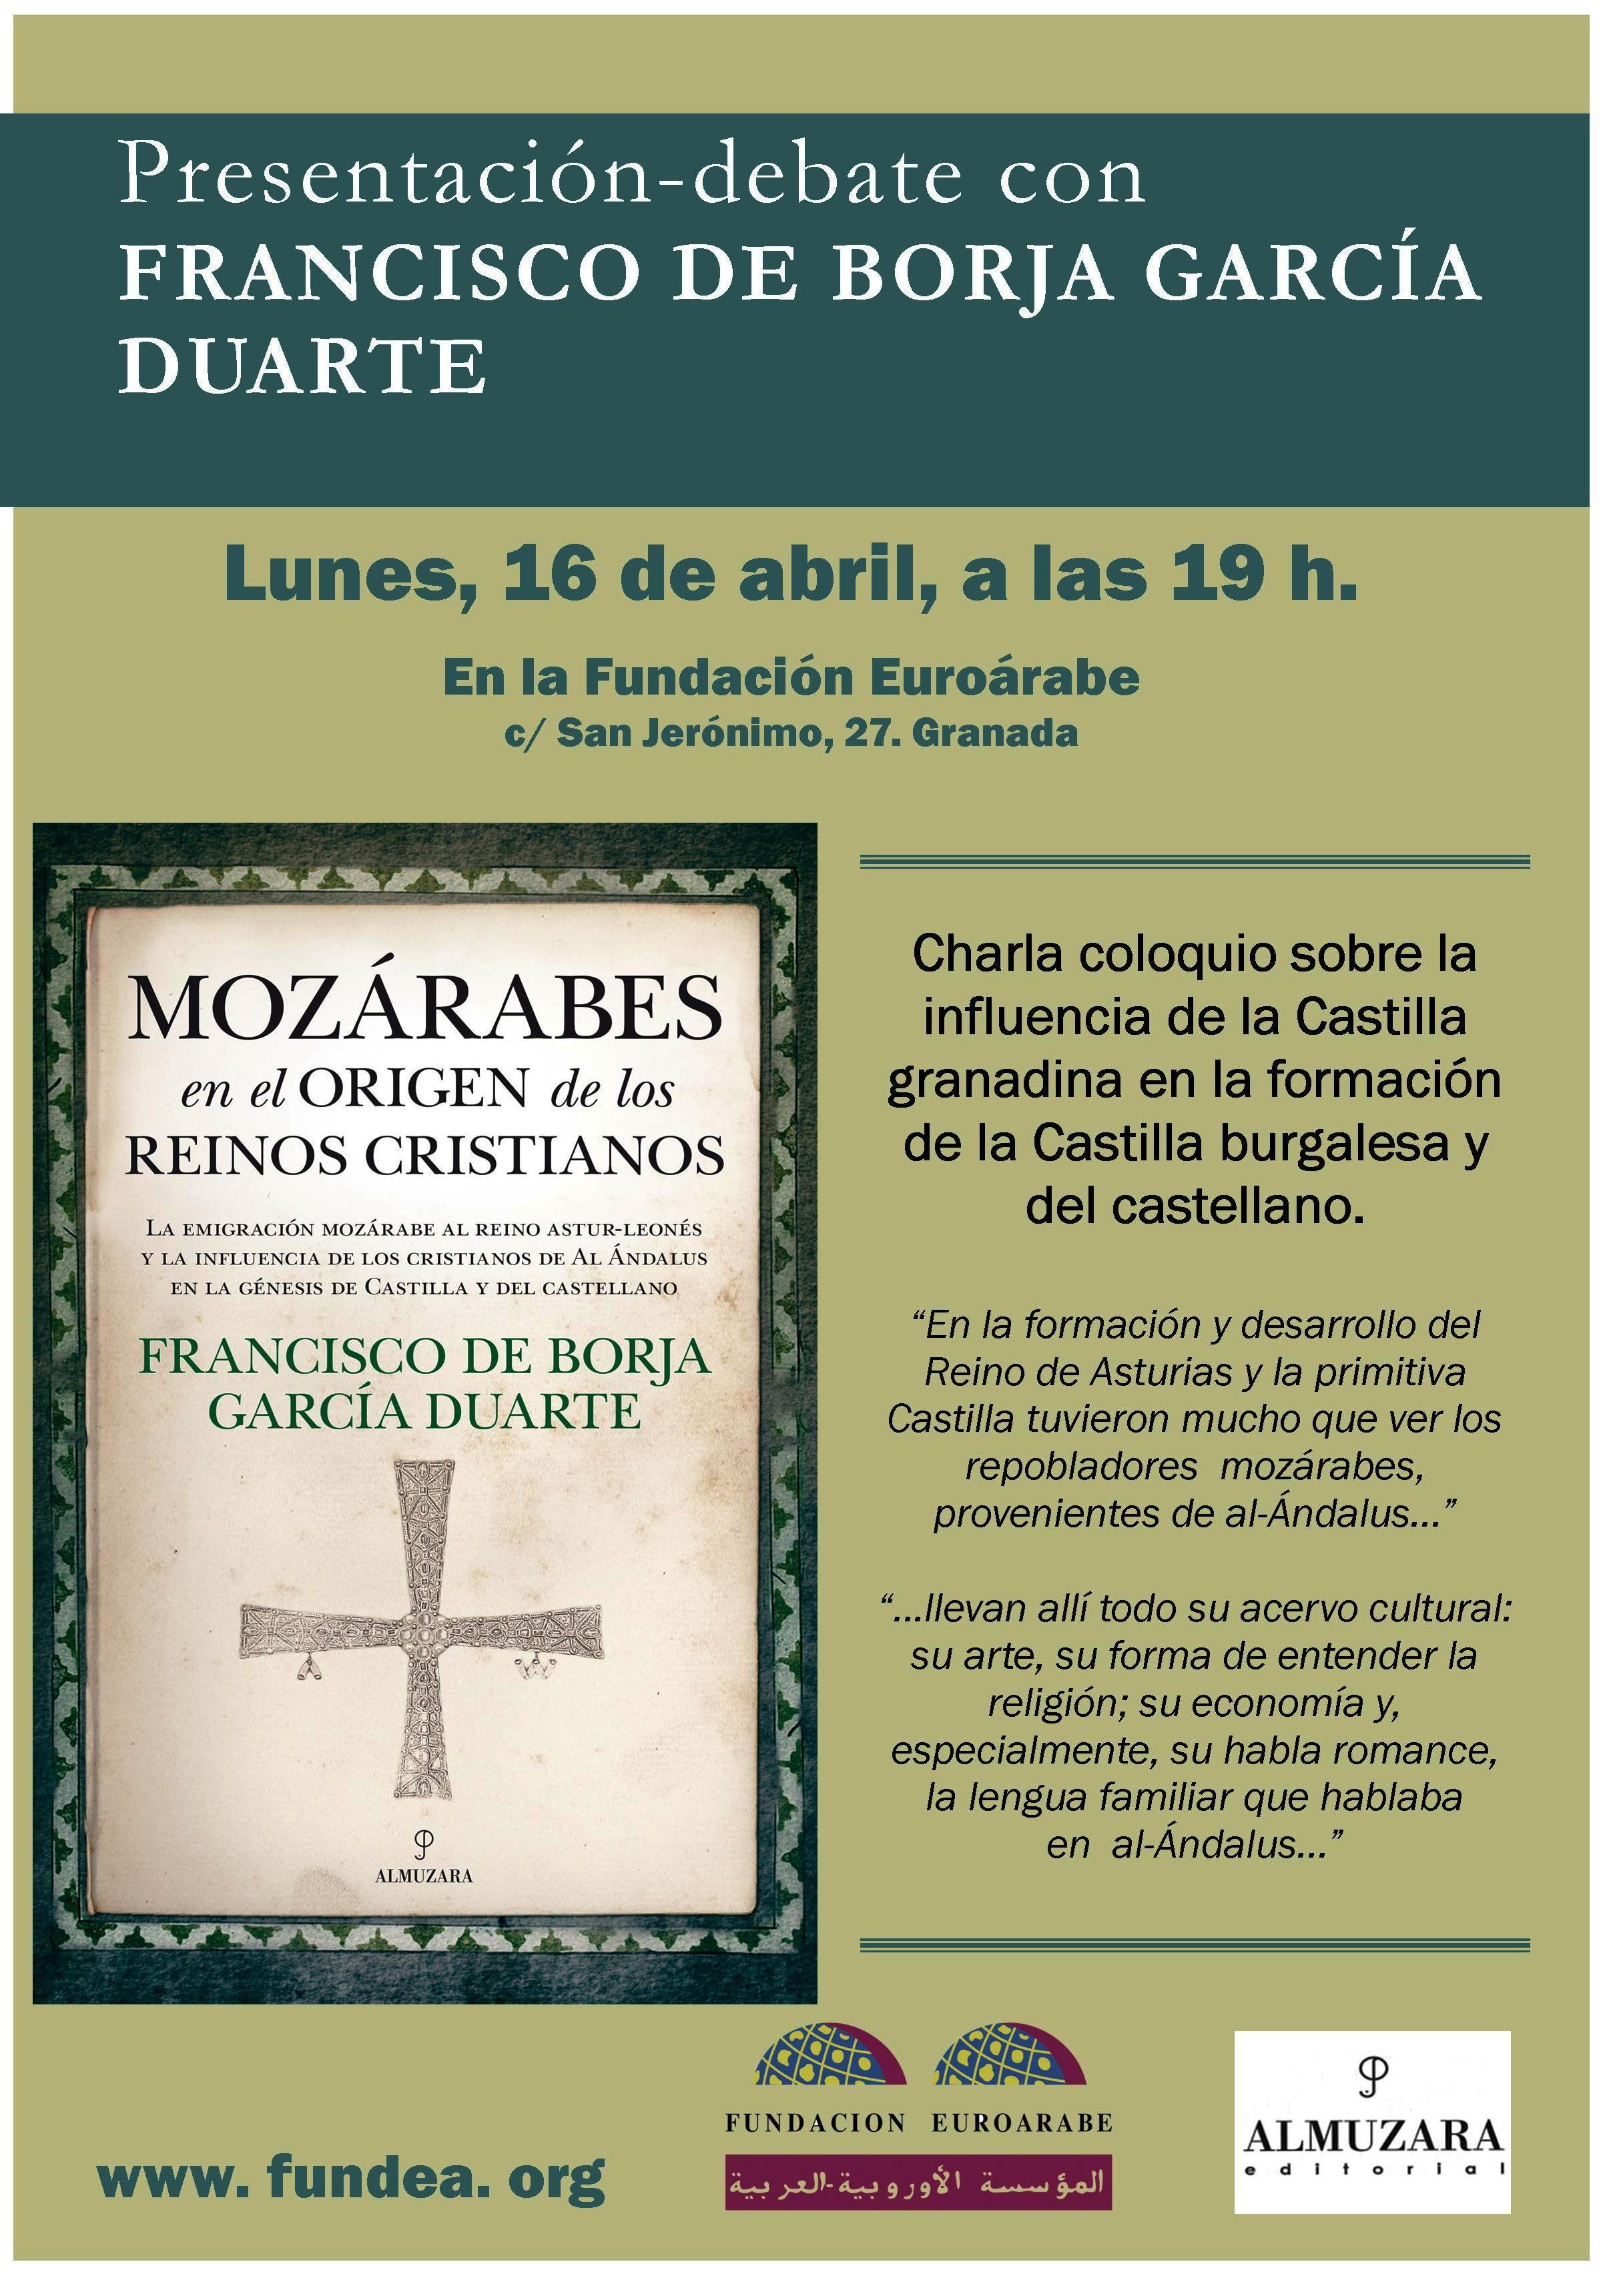 Borja García Duarte presenta su libro “Mozárabes en el origen de los reinos cristianos” en la Fundación Euroárabe el próximo 16 de Abril